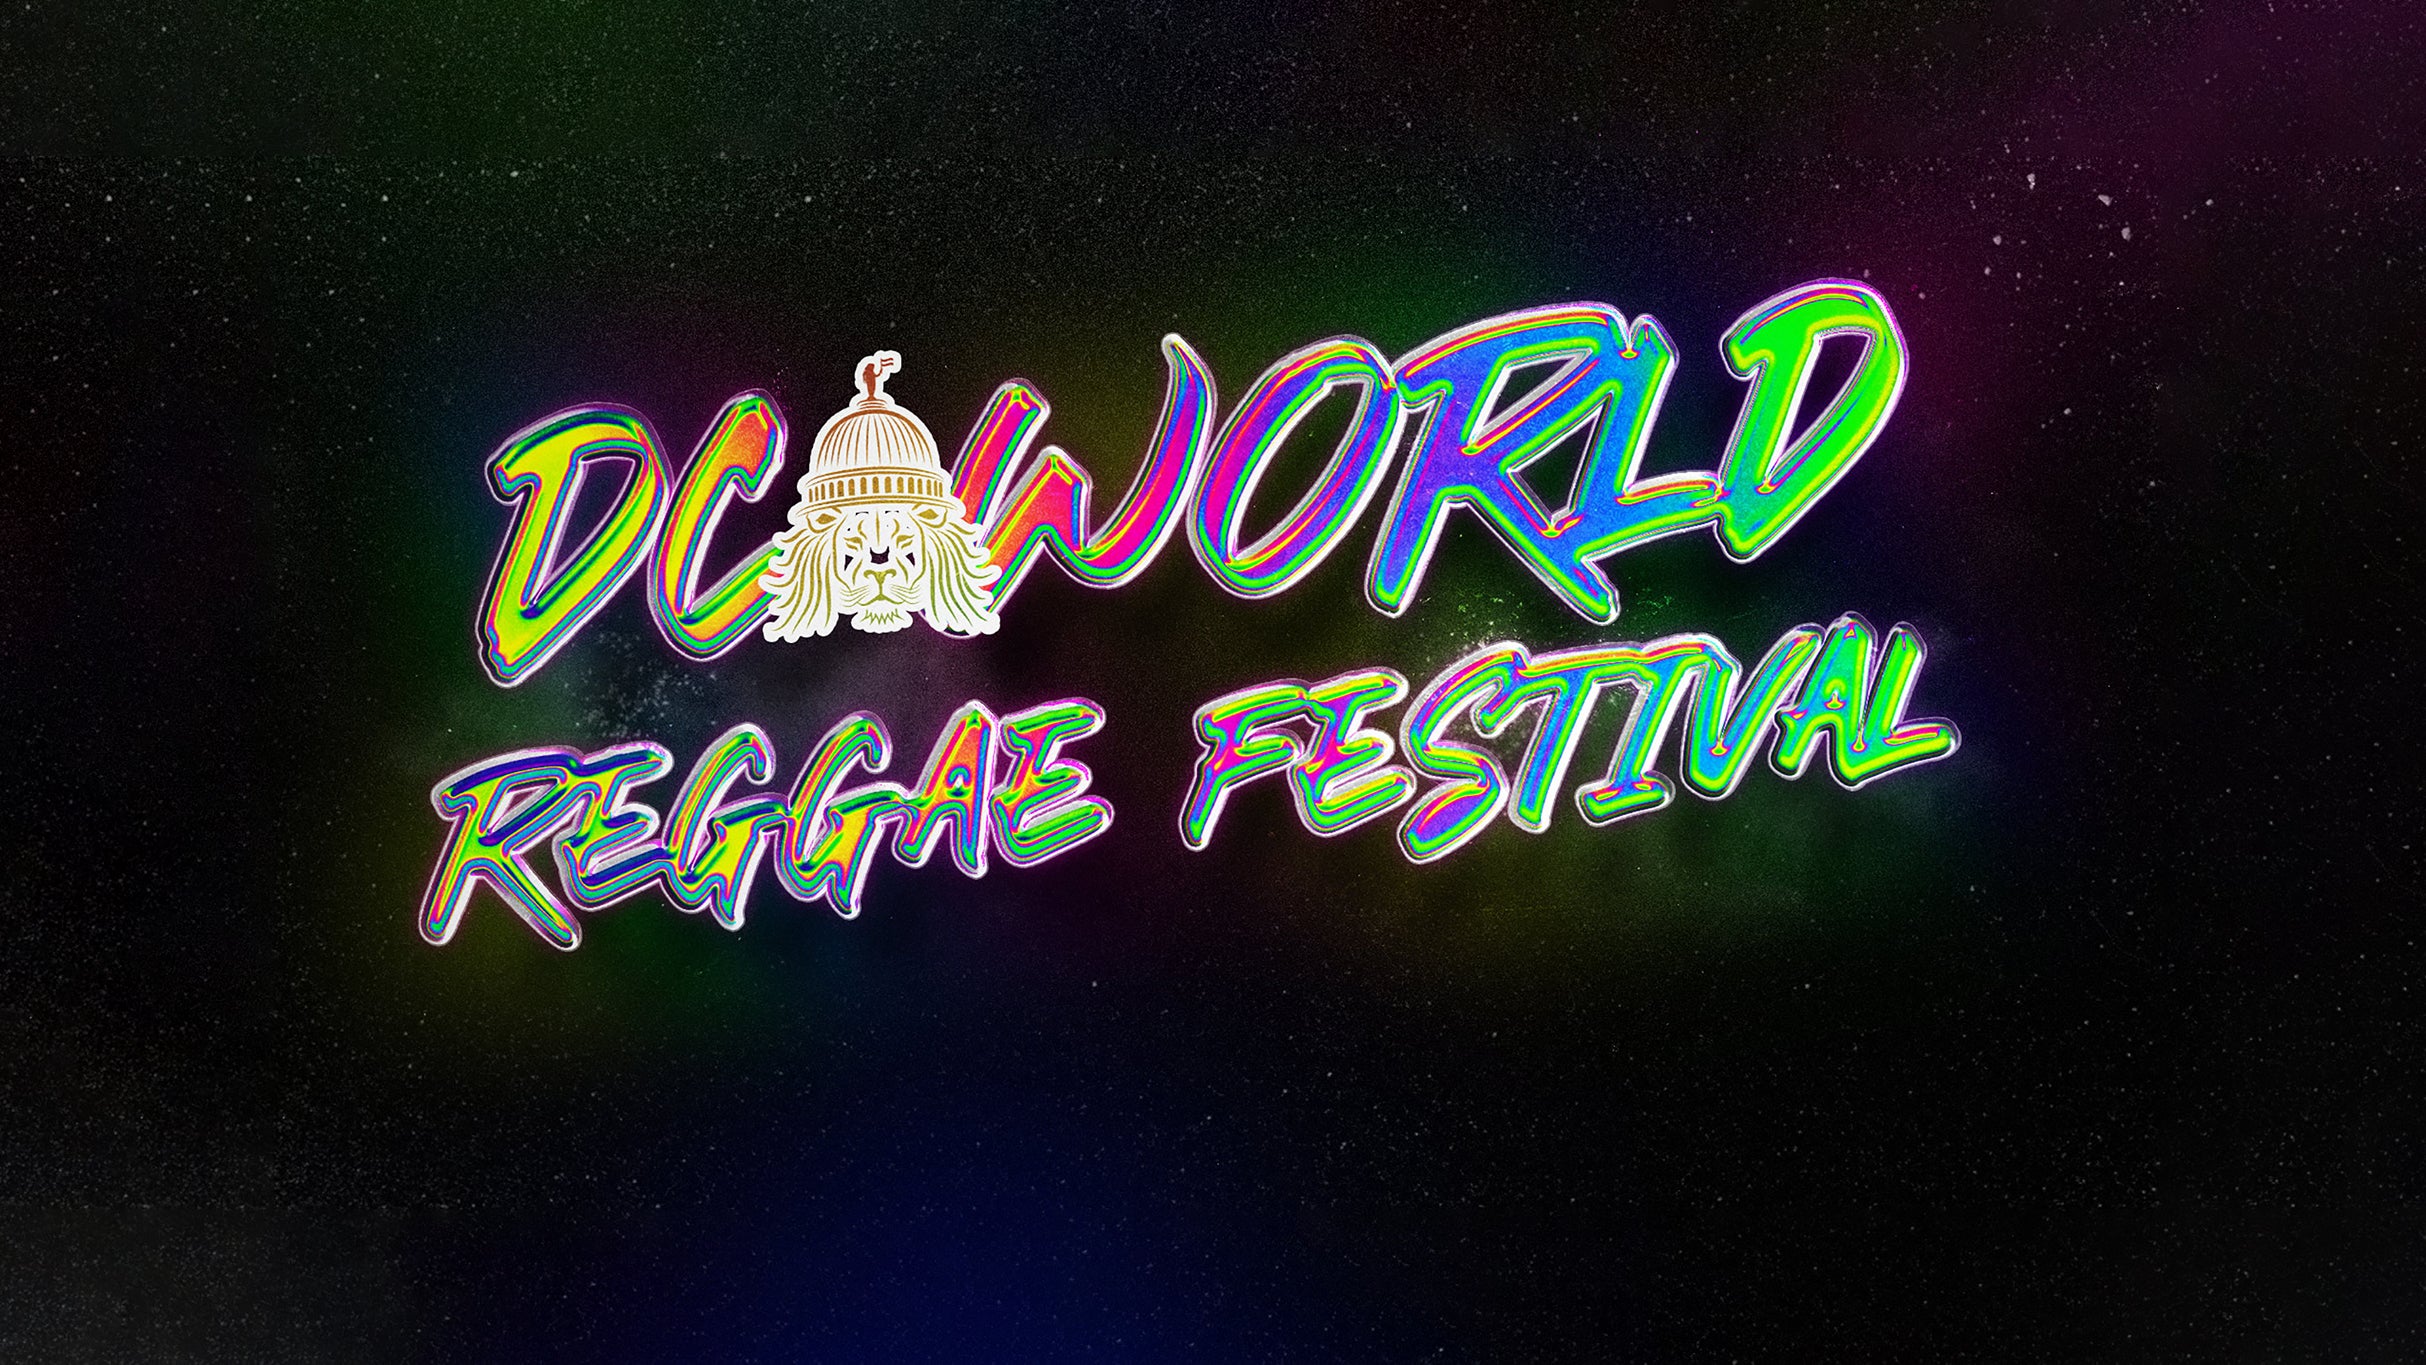 DC World Reggae Festival presale information on freepresalepasswords.com